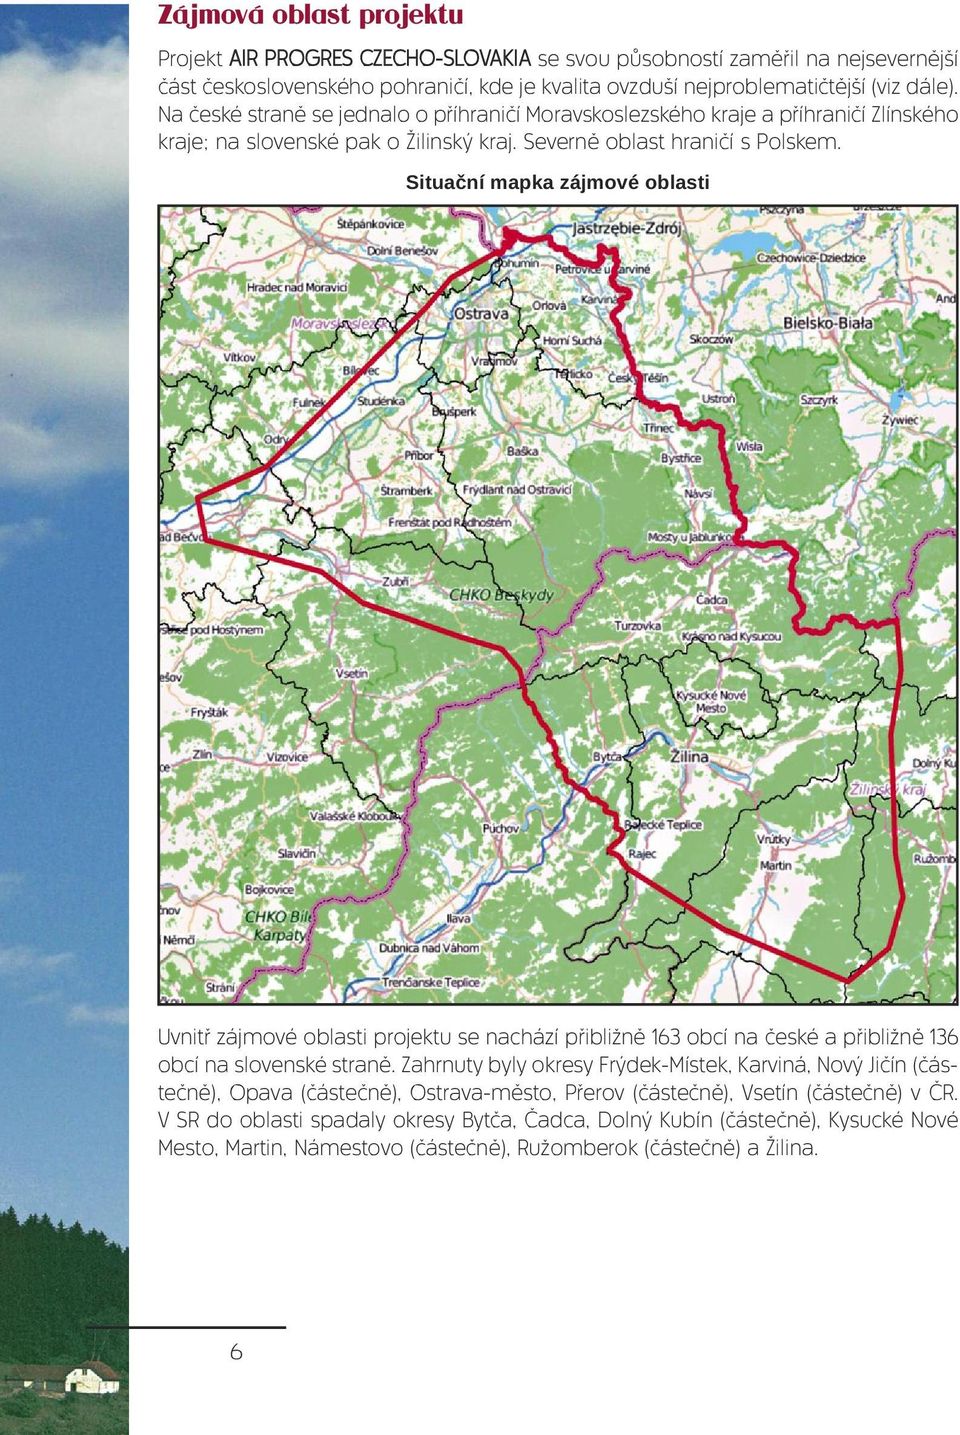 Situační mapka zájmové oblasti Uvnitř zájmové oblasti projektu se nachází přibližně 163 obcí na české a přibližně 136 obcí na slovenské straně.